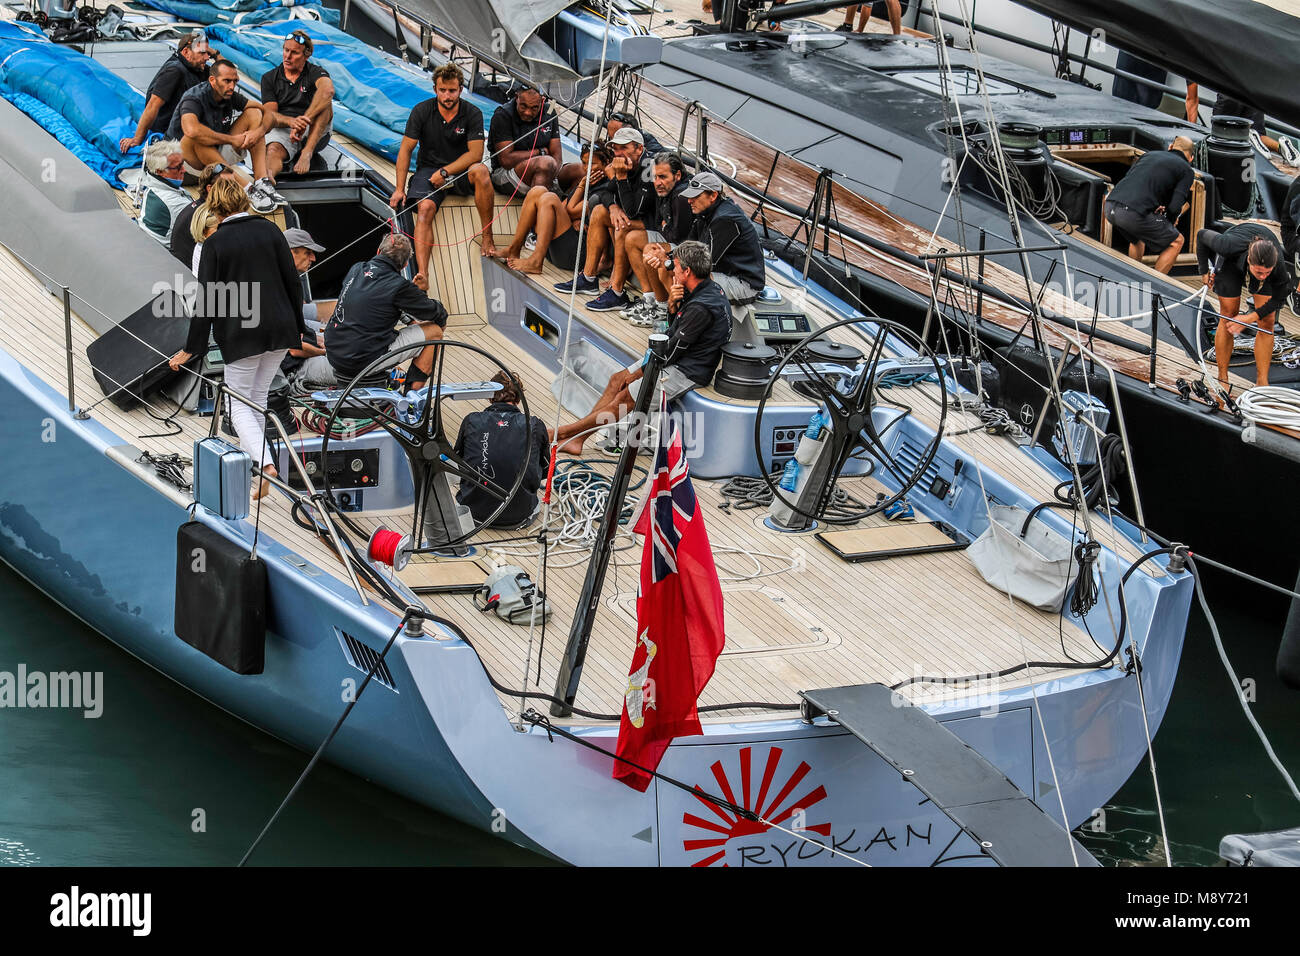 RYOKAN 2 DUAGLAS - Voiles de St. Tropez 29.09.2017-08.10.2017. - Sailors  Life after sailing Port de St. Tropez Stock Photo - Alamy